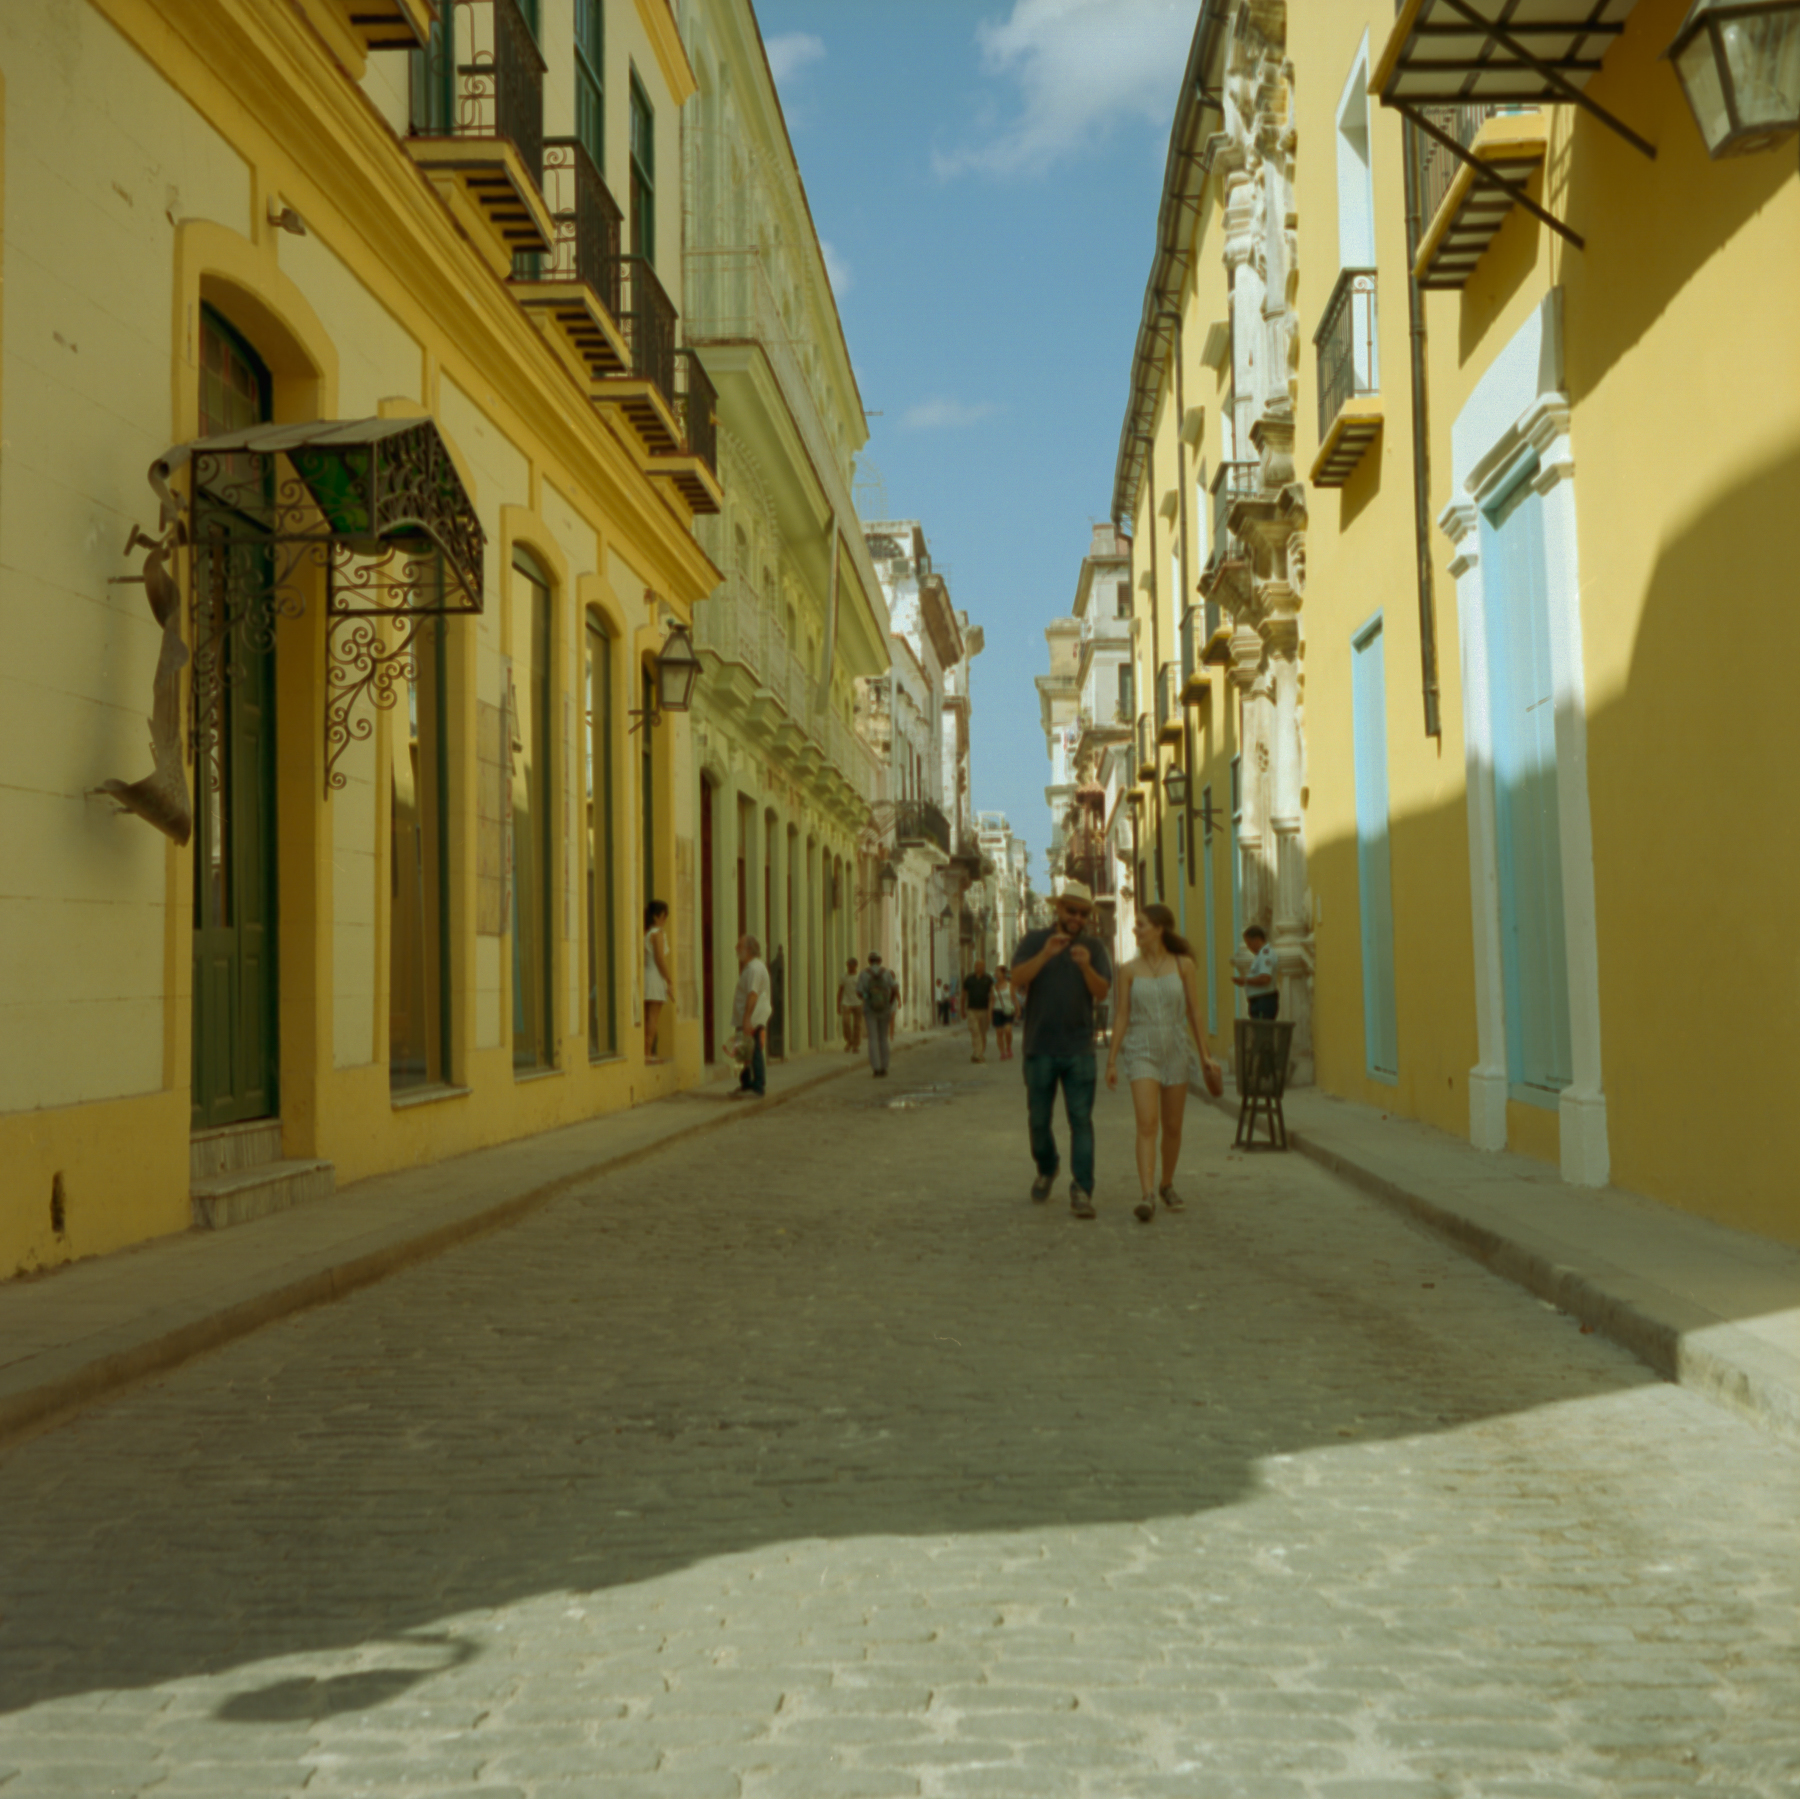 Cuba-9.jpg